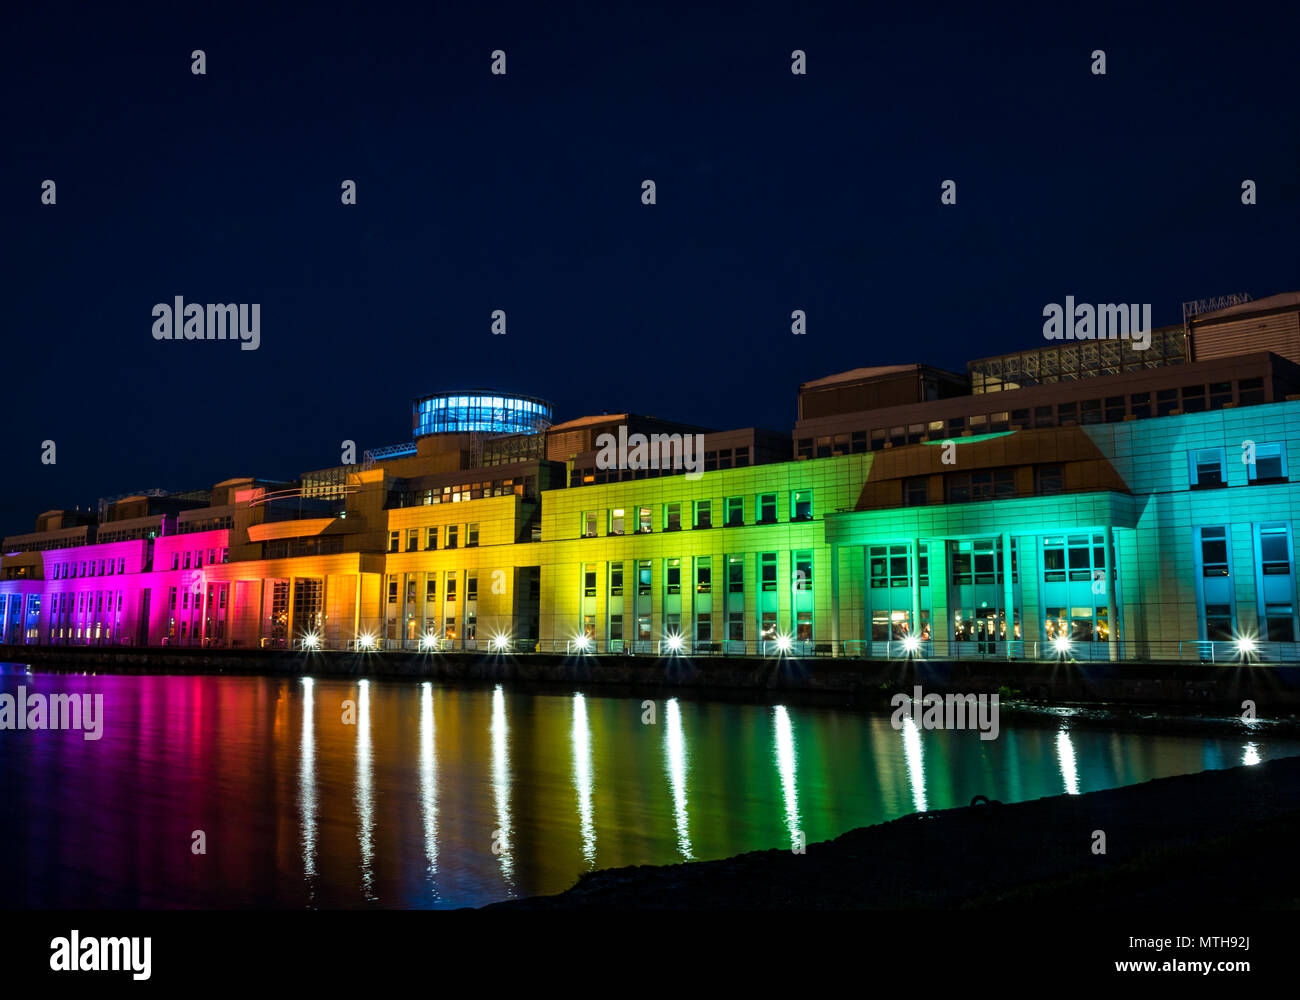 Victoria Quay schottische Regierung Gebäude, in Regenbogenfarben leuchten in der Nacht für den Internationalen Tag gegen Homophobie, Leith, Edinburgh, Schottland, Großbritannien Stockfoto